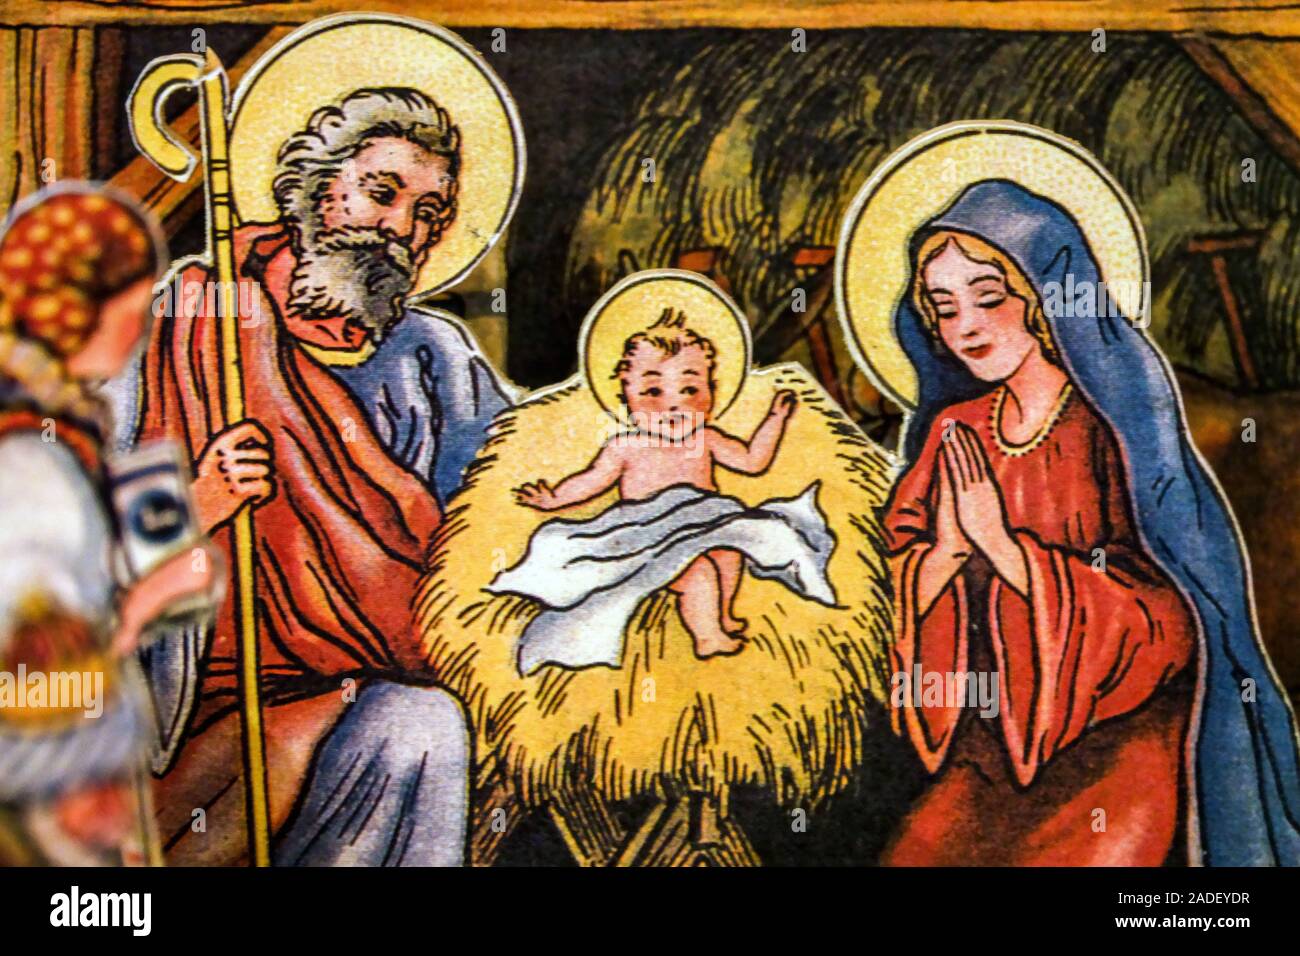 Weihnachtskrippe traditionelle Szenen aus der Geburt von Jesus Krippe.  Altes Papiermodell Stockfotografie - Alamy